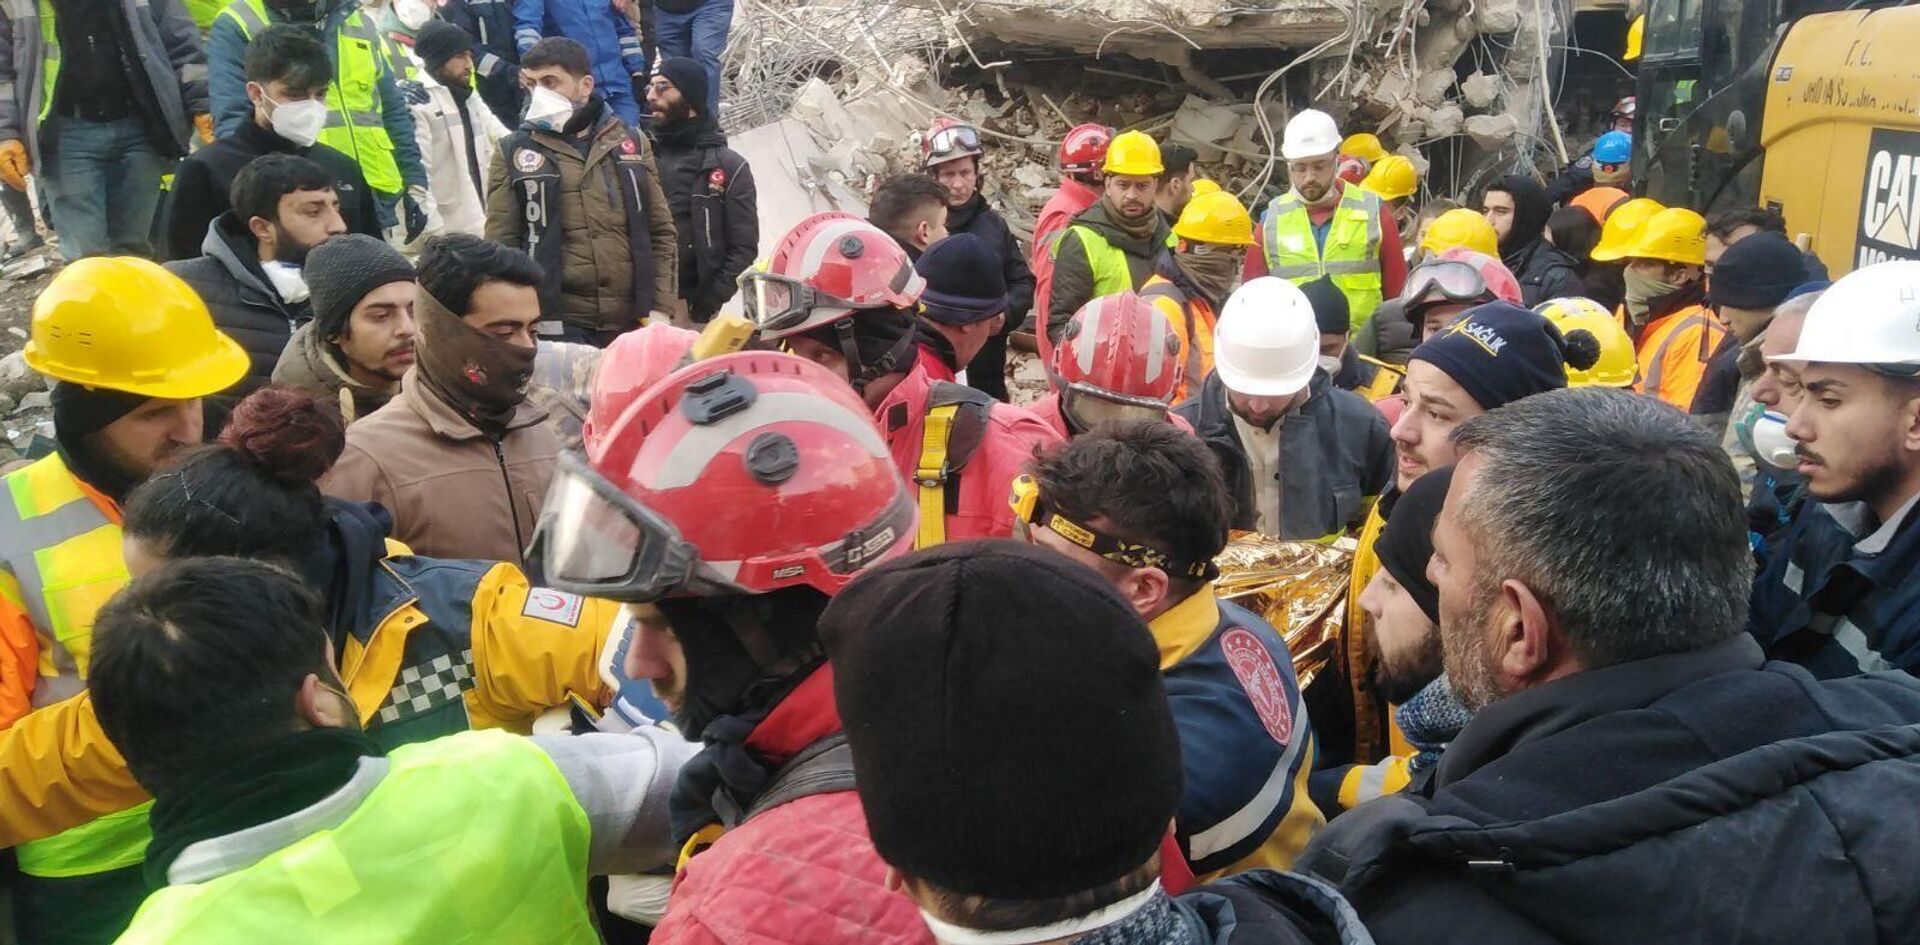 Српски ватрогасци-спасиоци спасили су седамнаестогодишњу девојку која је 108 сати била под рушевинама седмоспратне зграде у Турској. - Sputnik Србија, 1920, 10.02.2023